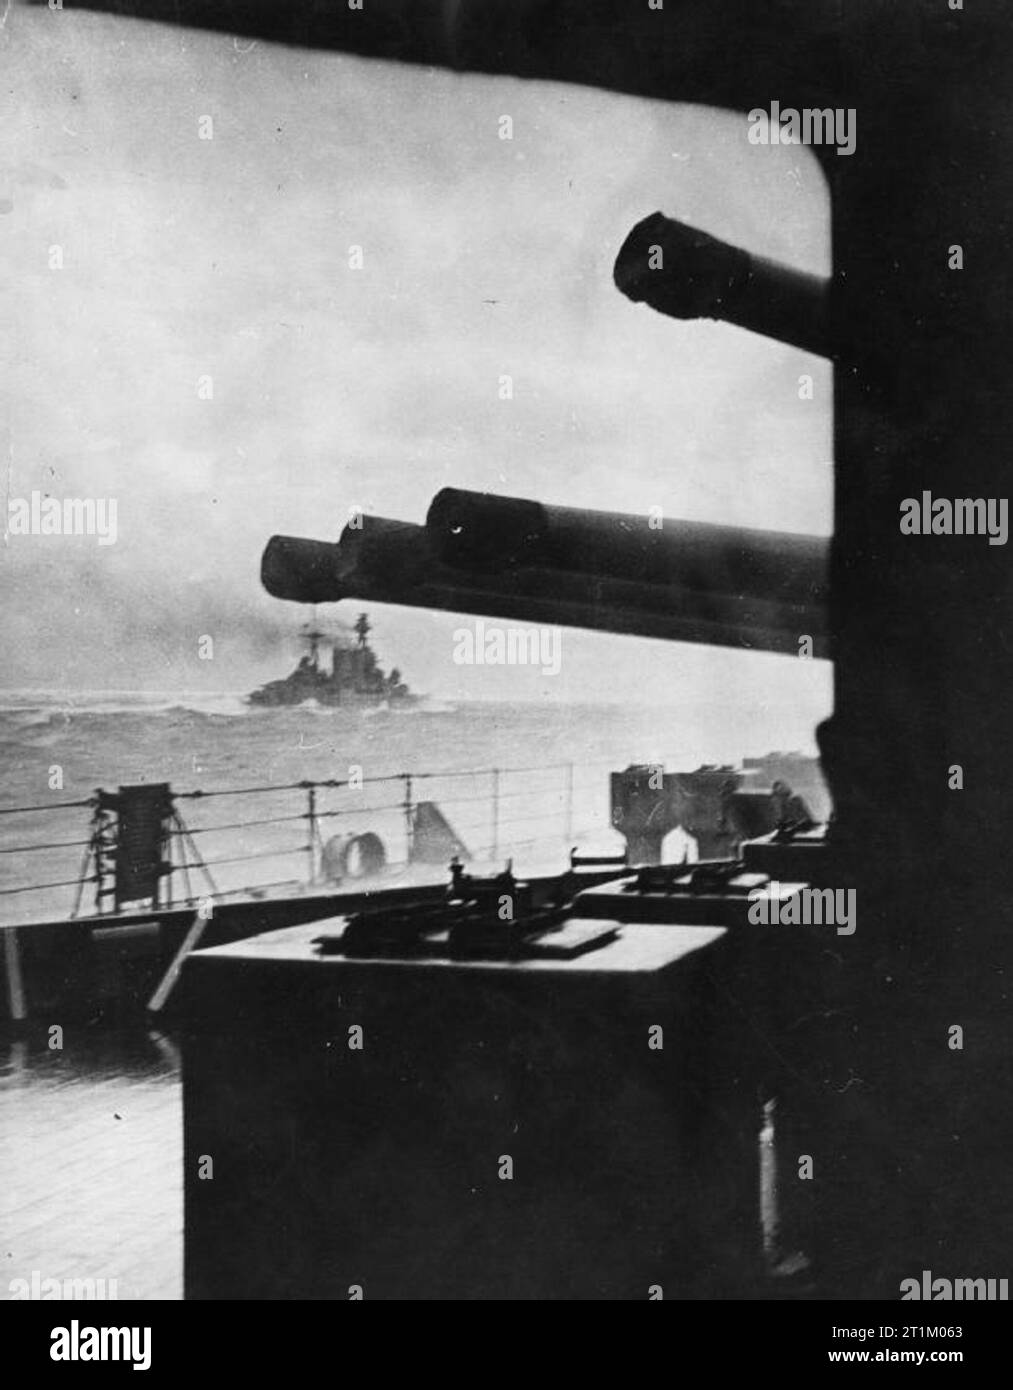 HMS Hood HMS HOOD entrar en acción contra el acorazado alemán Bismarck y Prinz Eugen battlecruiser, 24 de mayo de 1941. Esta imagen, tomada desde el HMS Prince of Wales fue la última fotografía jamás tomada del HMS Hood. Foto de stock